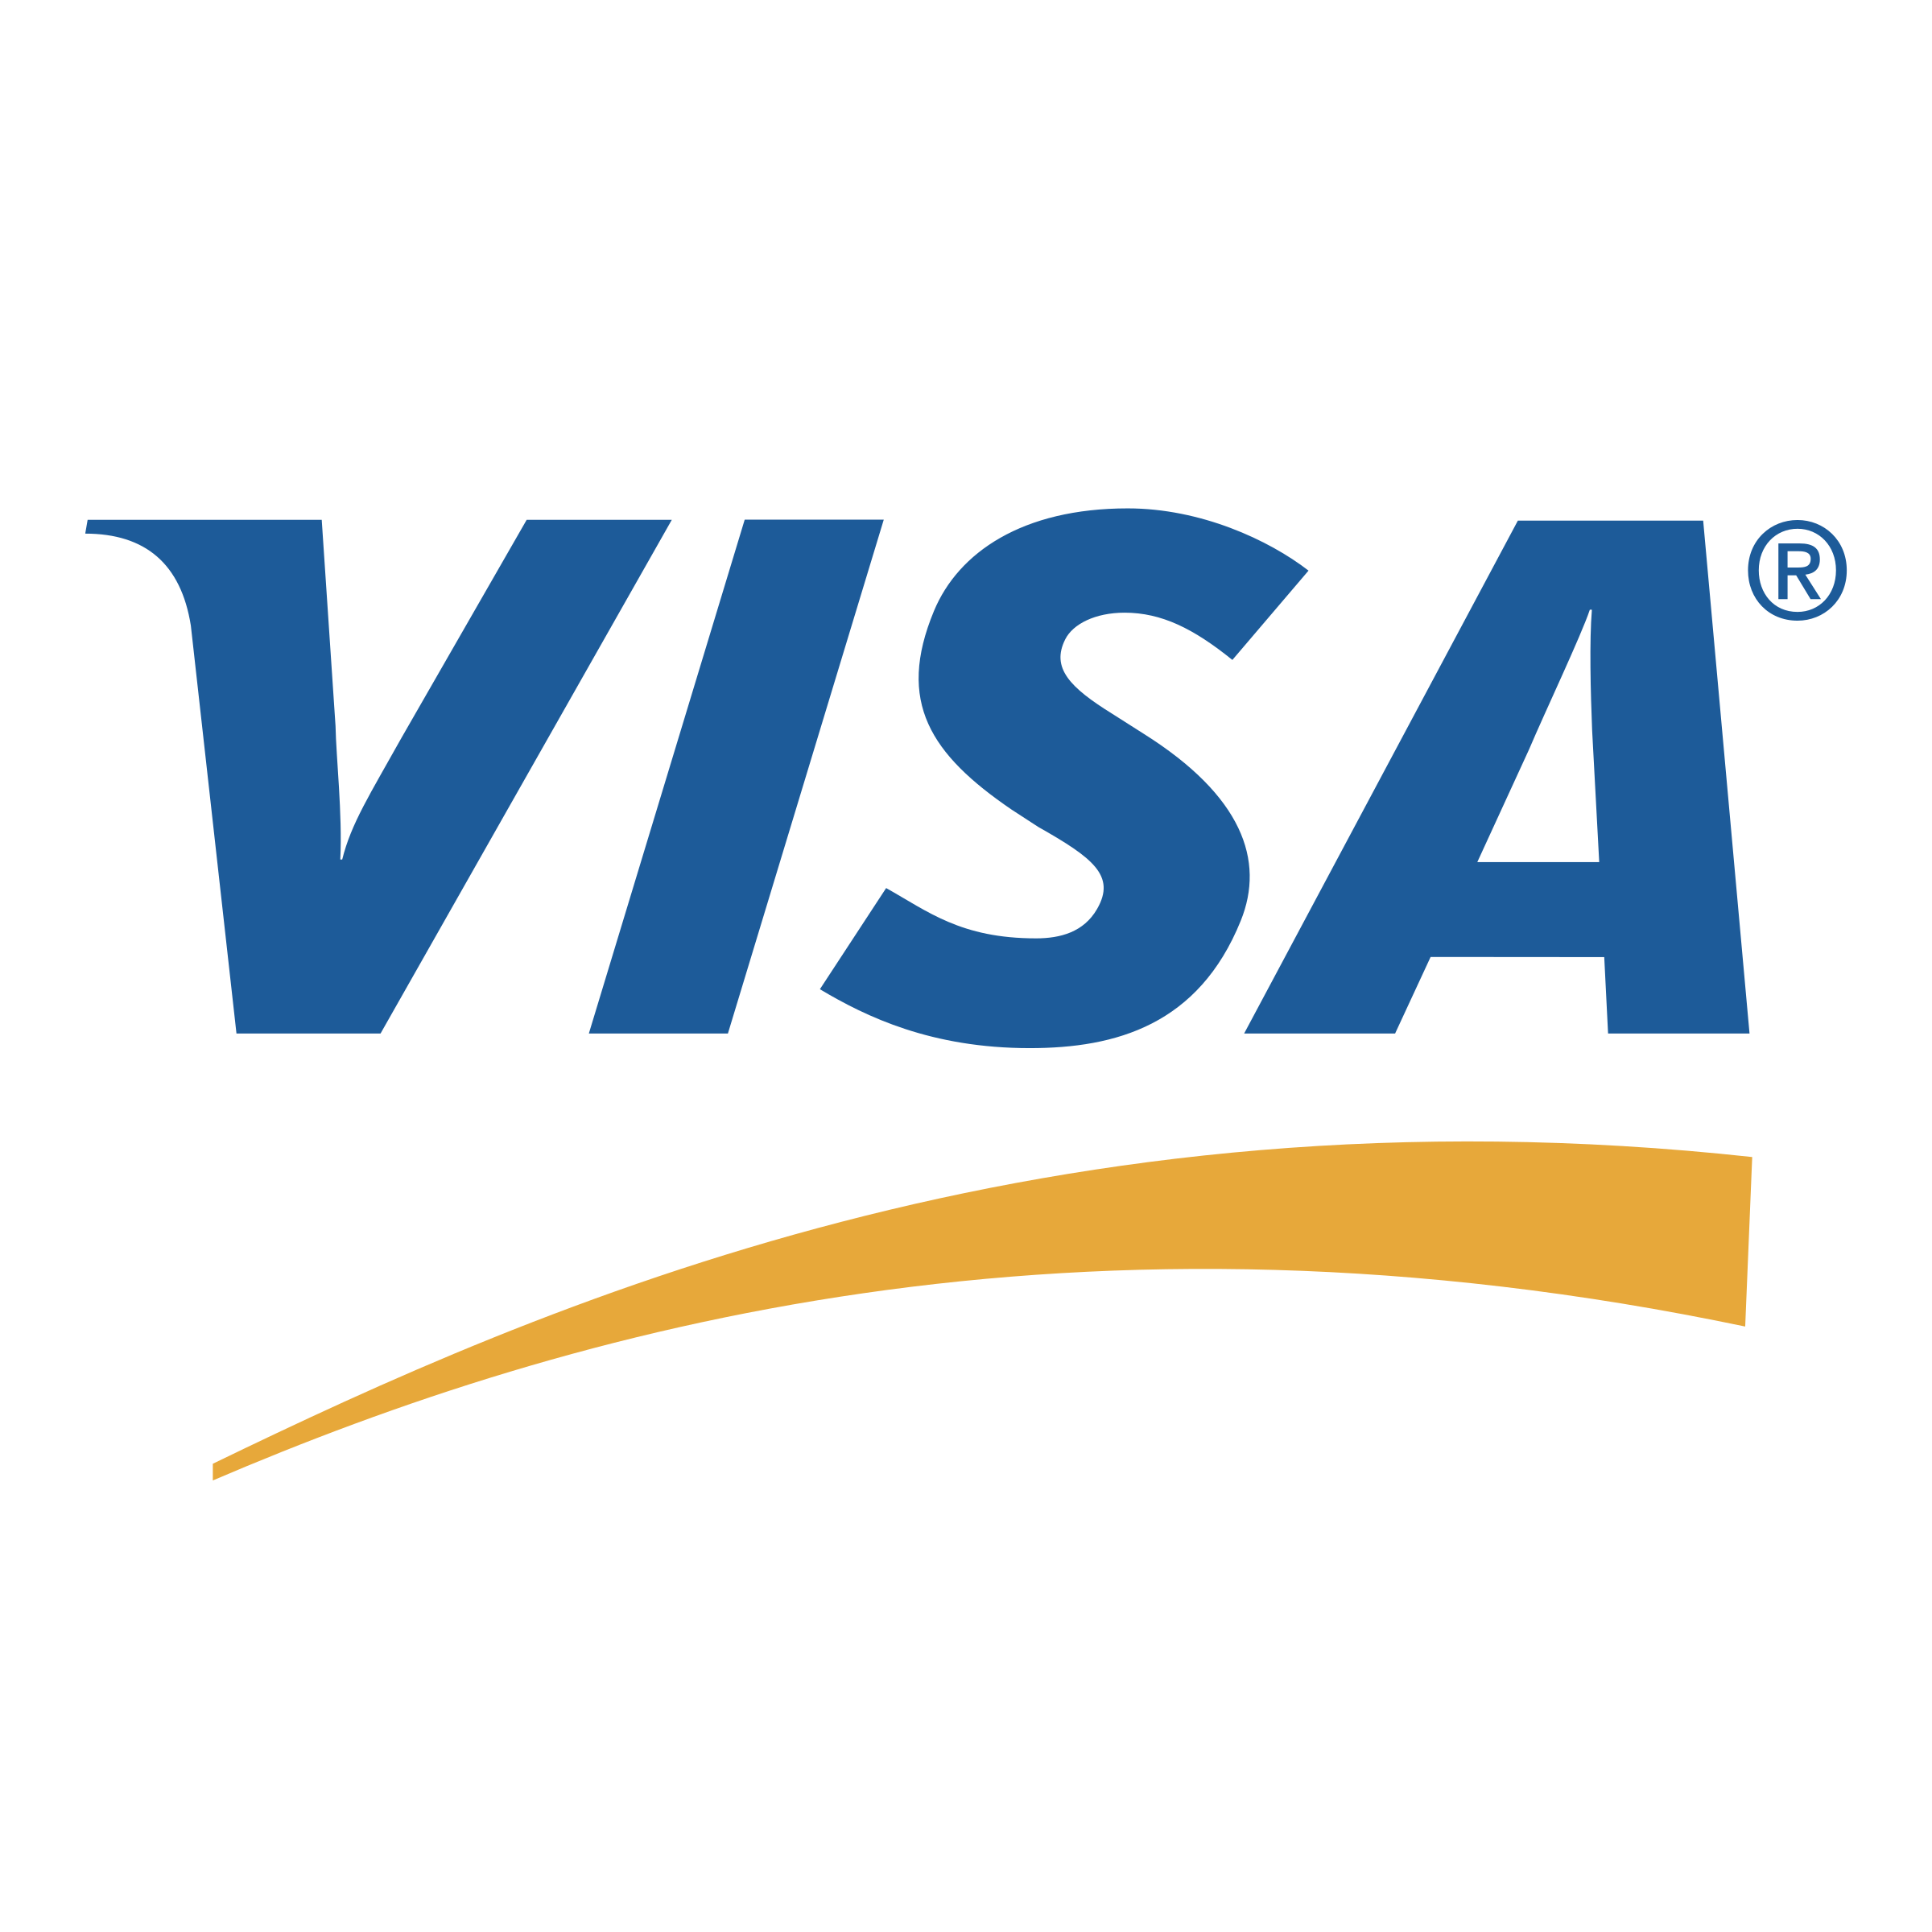 Visa Logo PNG HD Quality